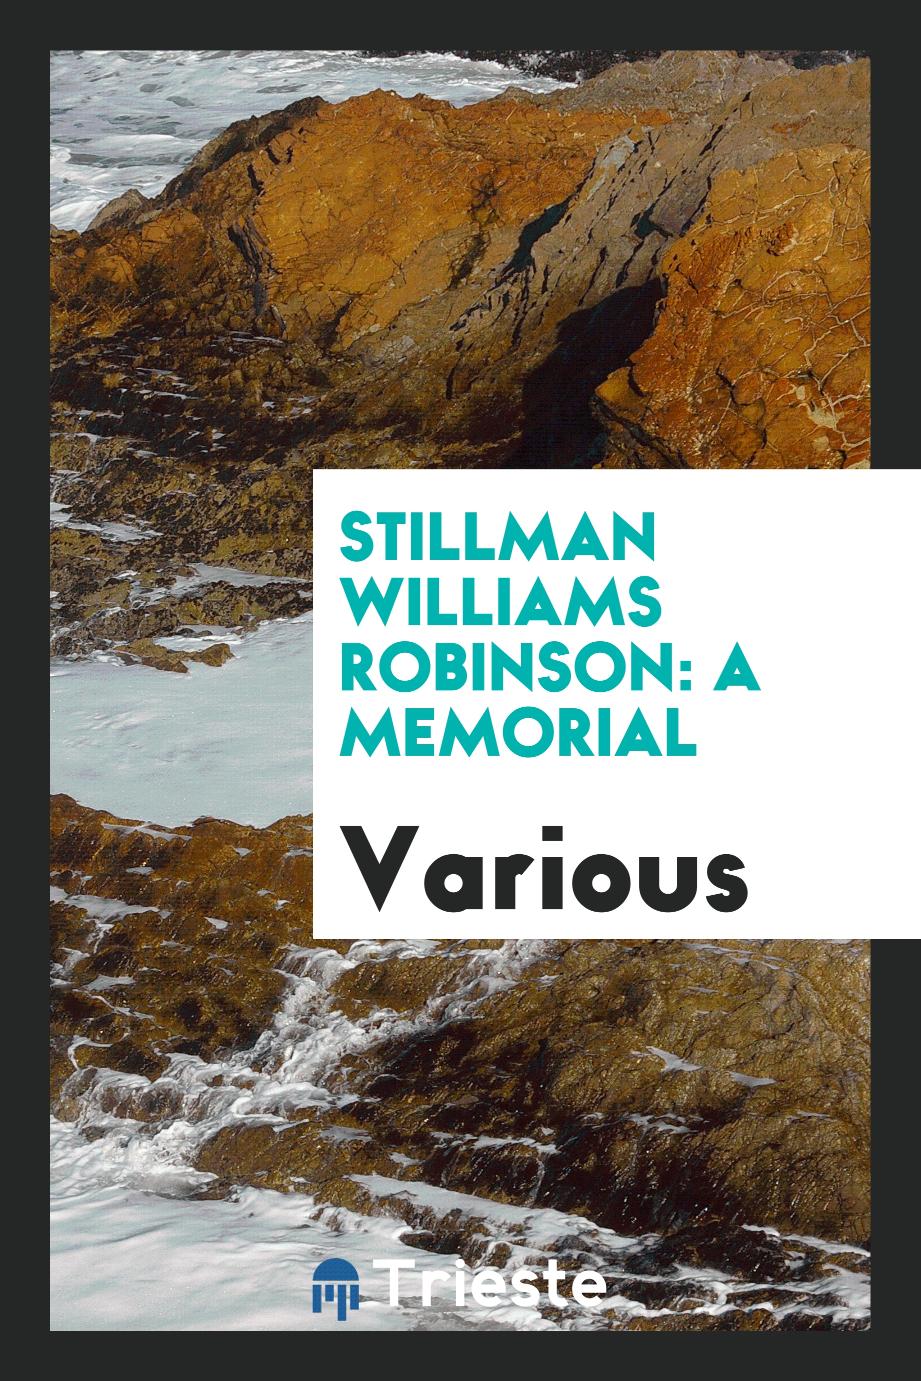 Stillman Williams Robinson: a memorial